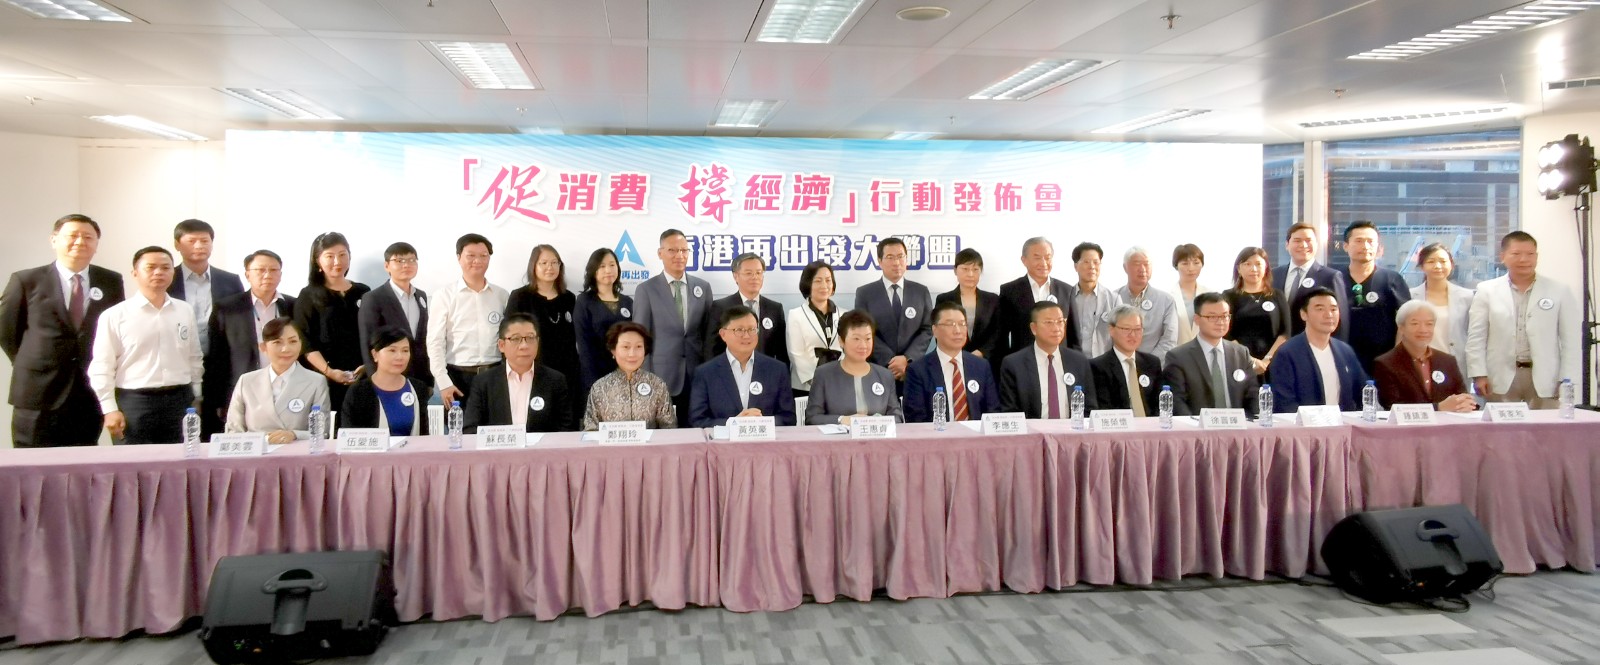 蘇長榮理事長出席香港再出發大聯盟 「促消費 撐經濟」行動發佈會-0